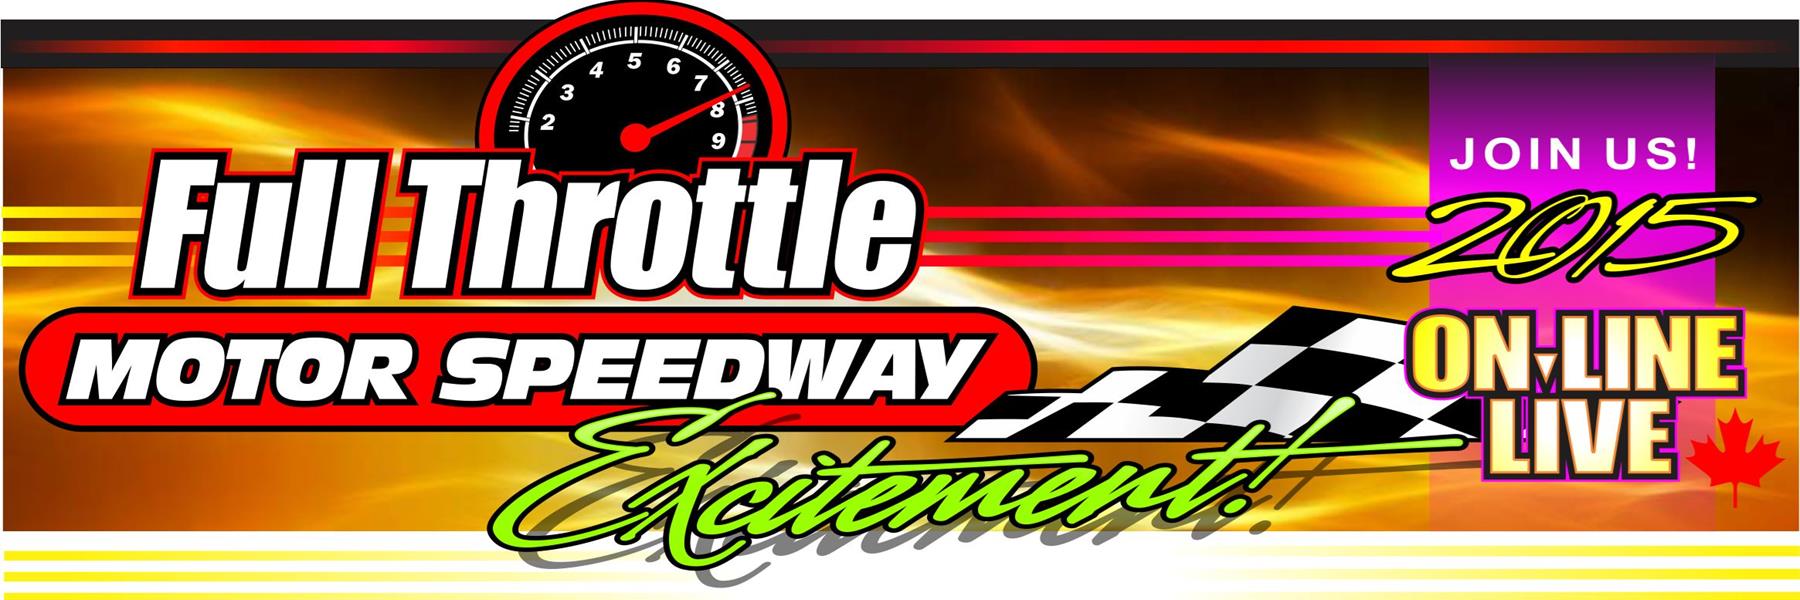 8/21/2015 - Full Throttle Motor Speedway